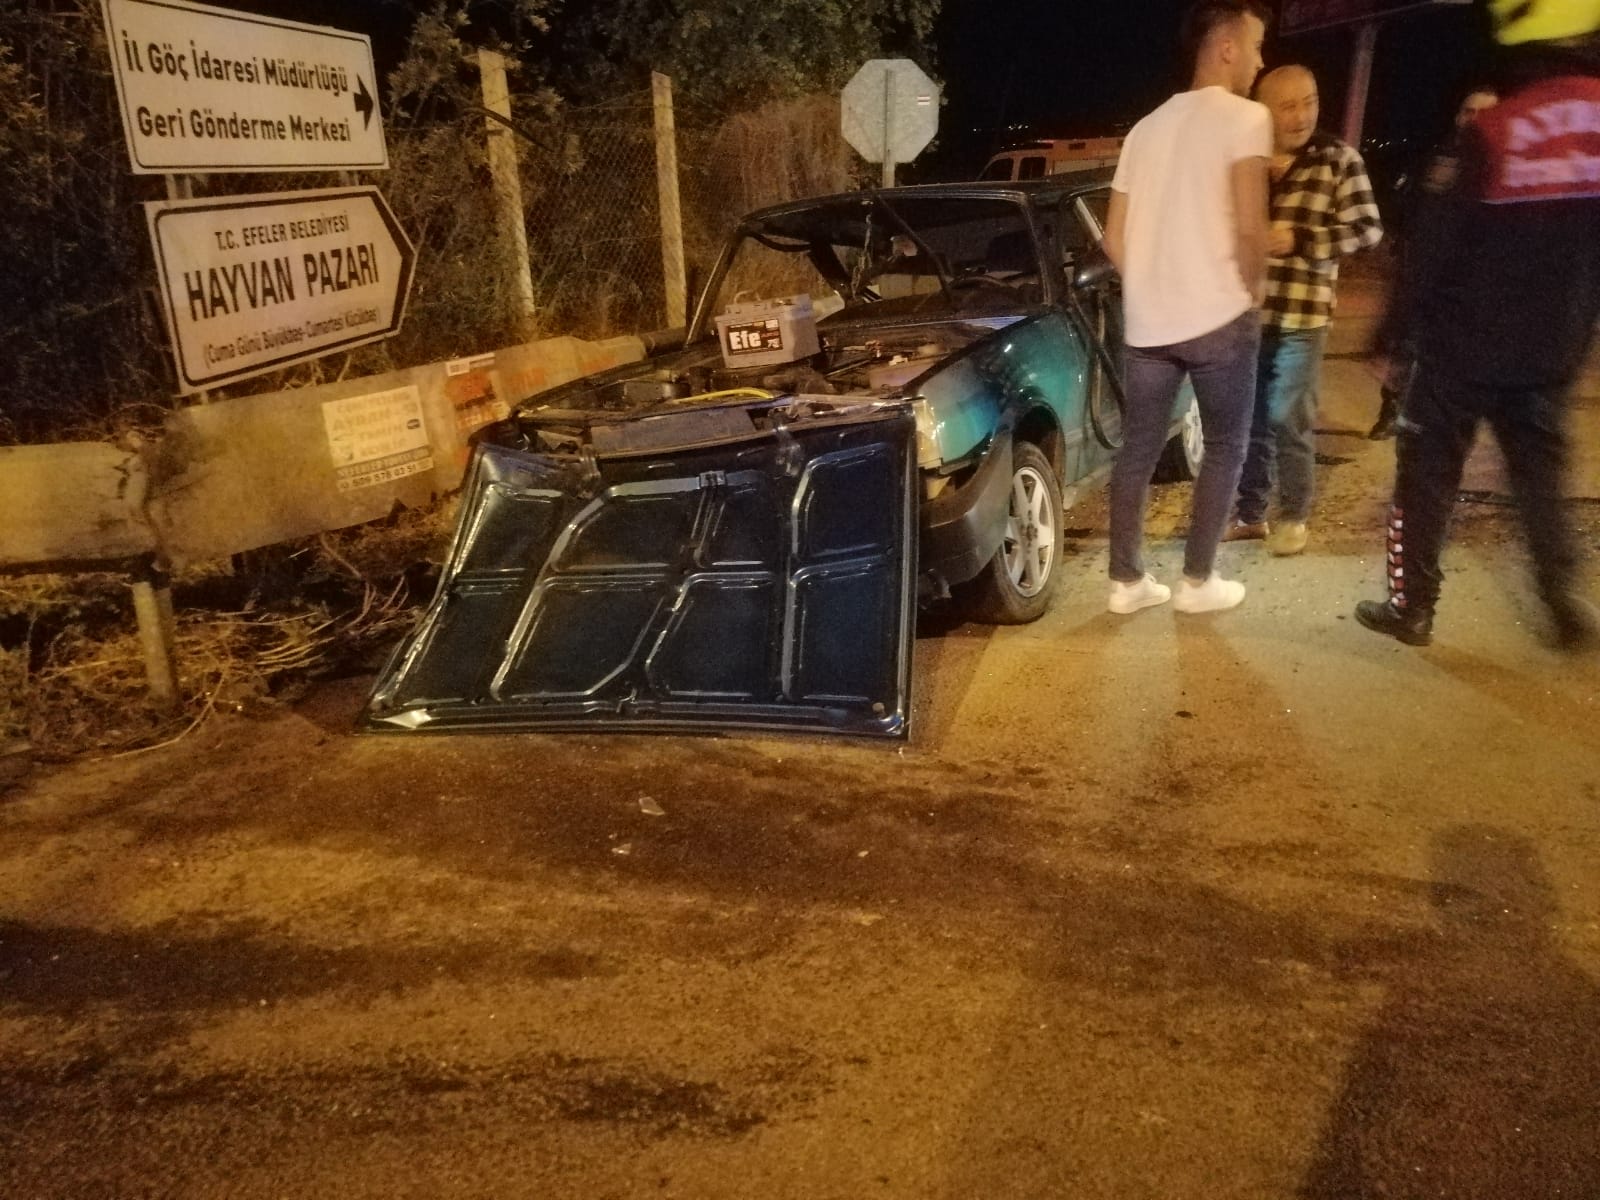 Aydın’da iki aracın karıştığı kazada 5 kişi yaralandı